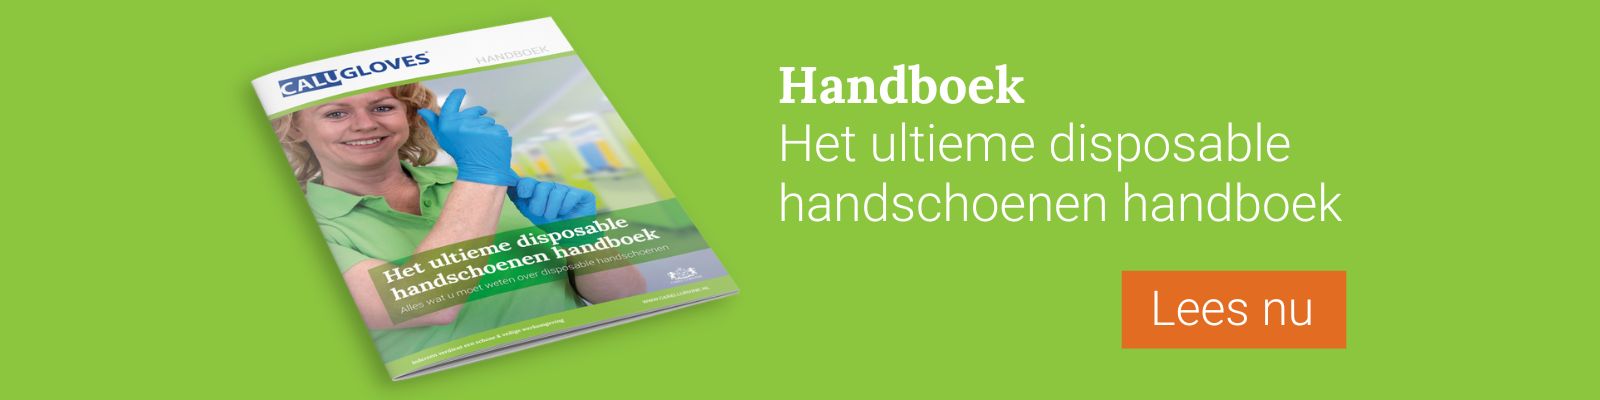 Facility CTA - Disposable handschoenen handboek